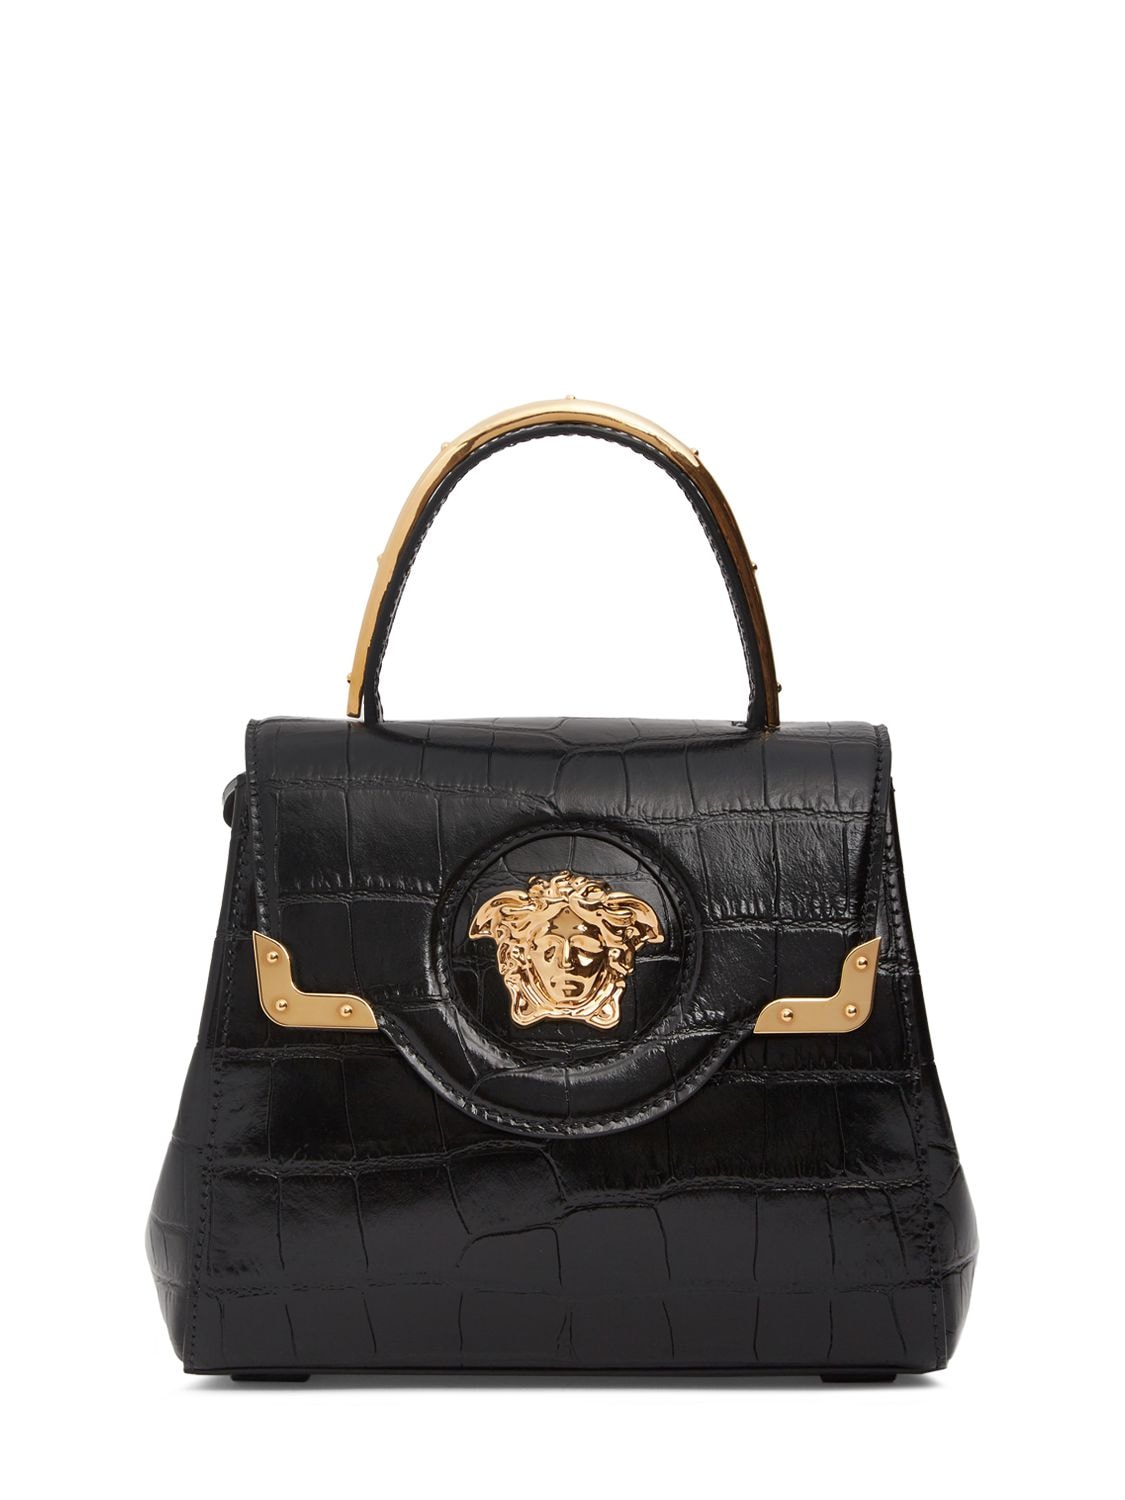 Versace Croc Embossed Leather Top Handle Bag In Black